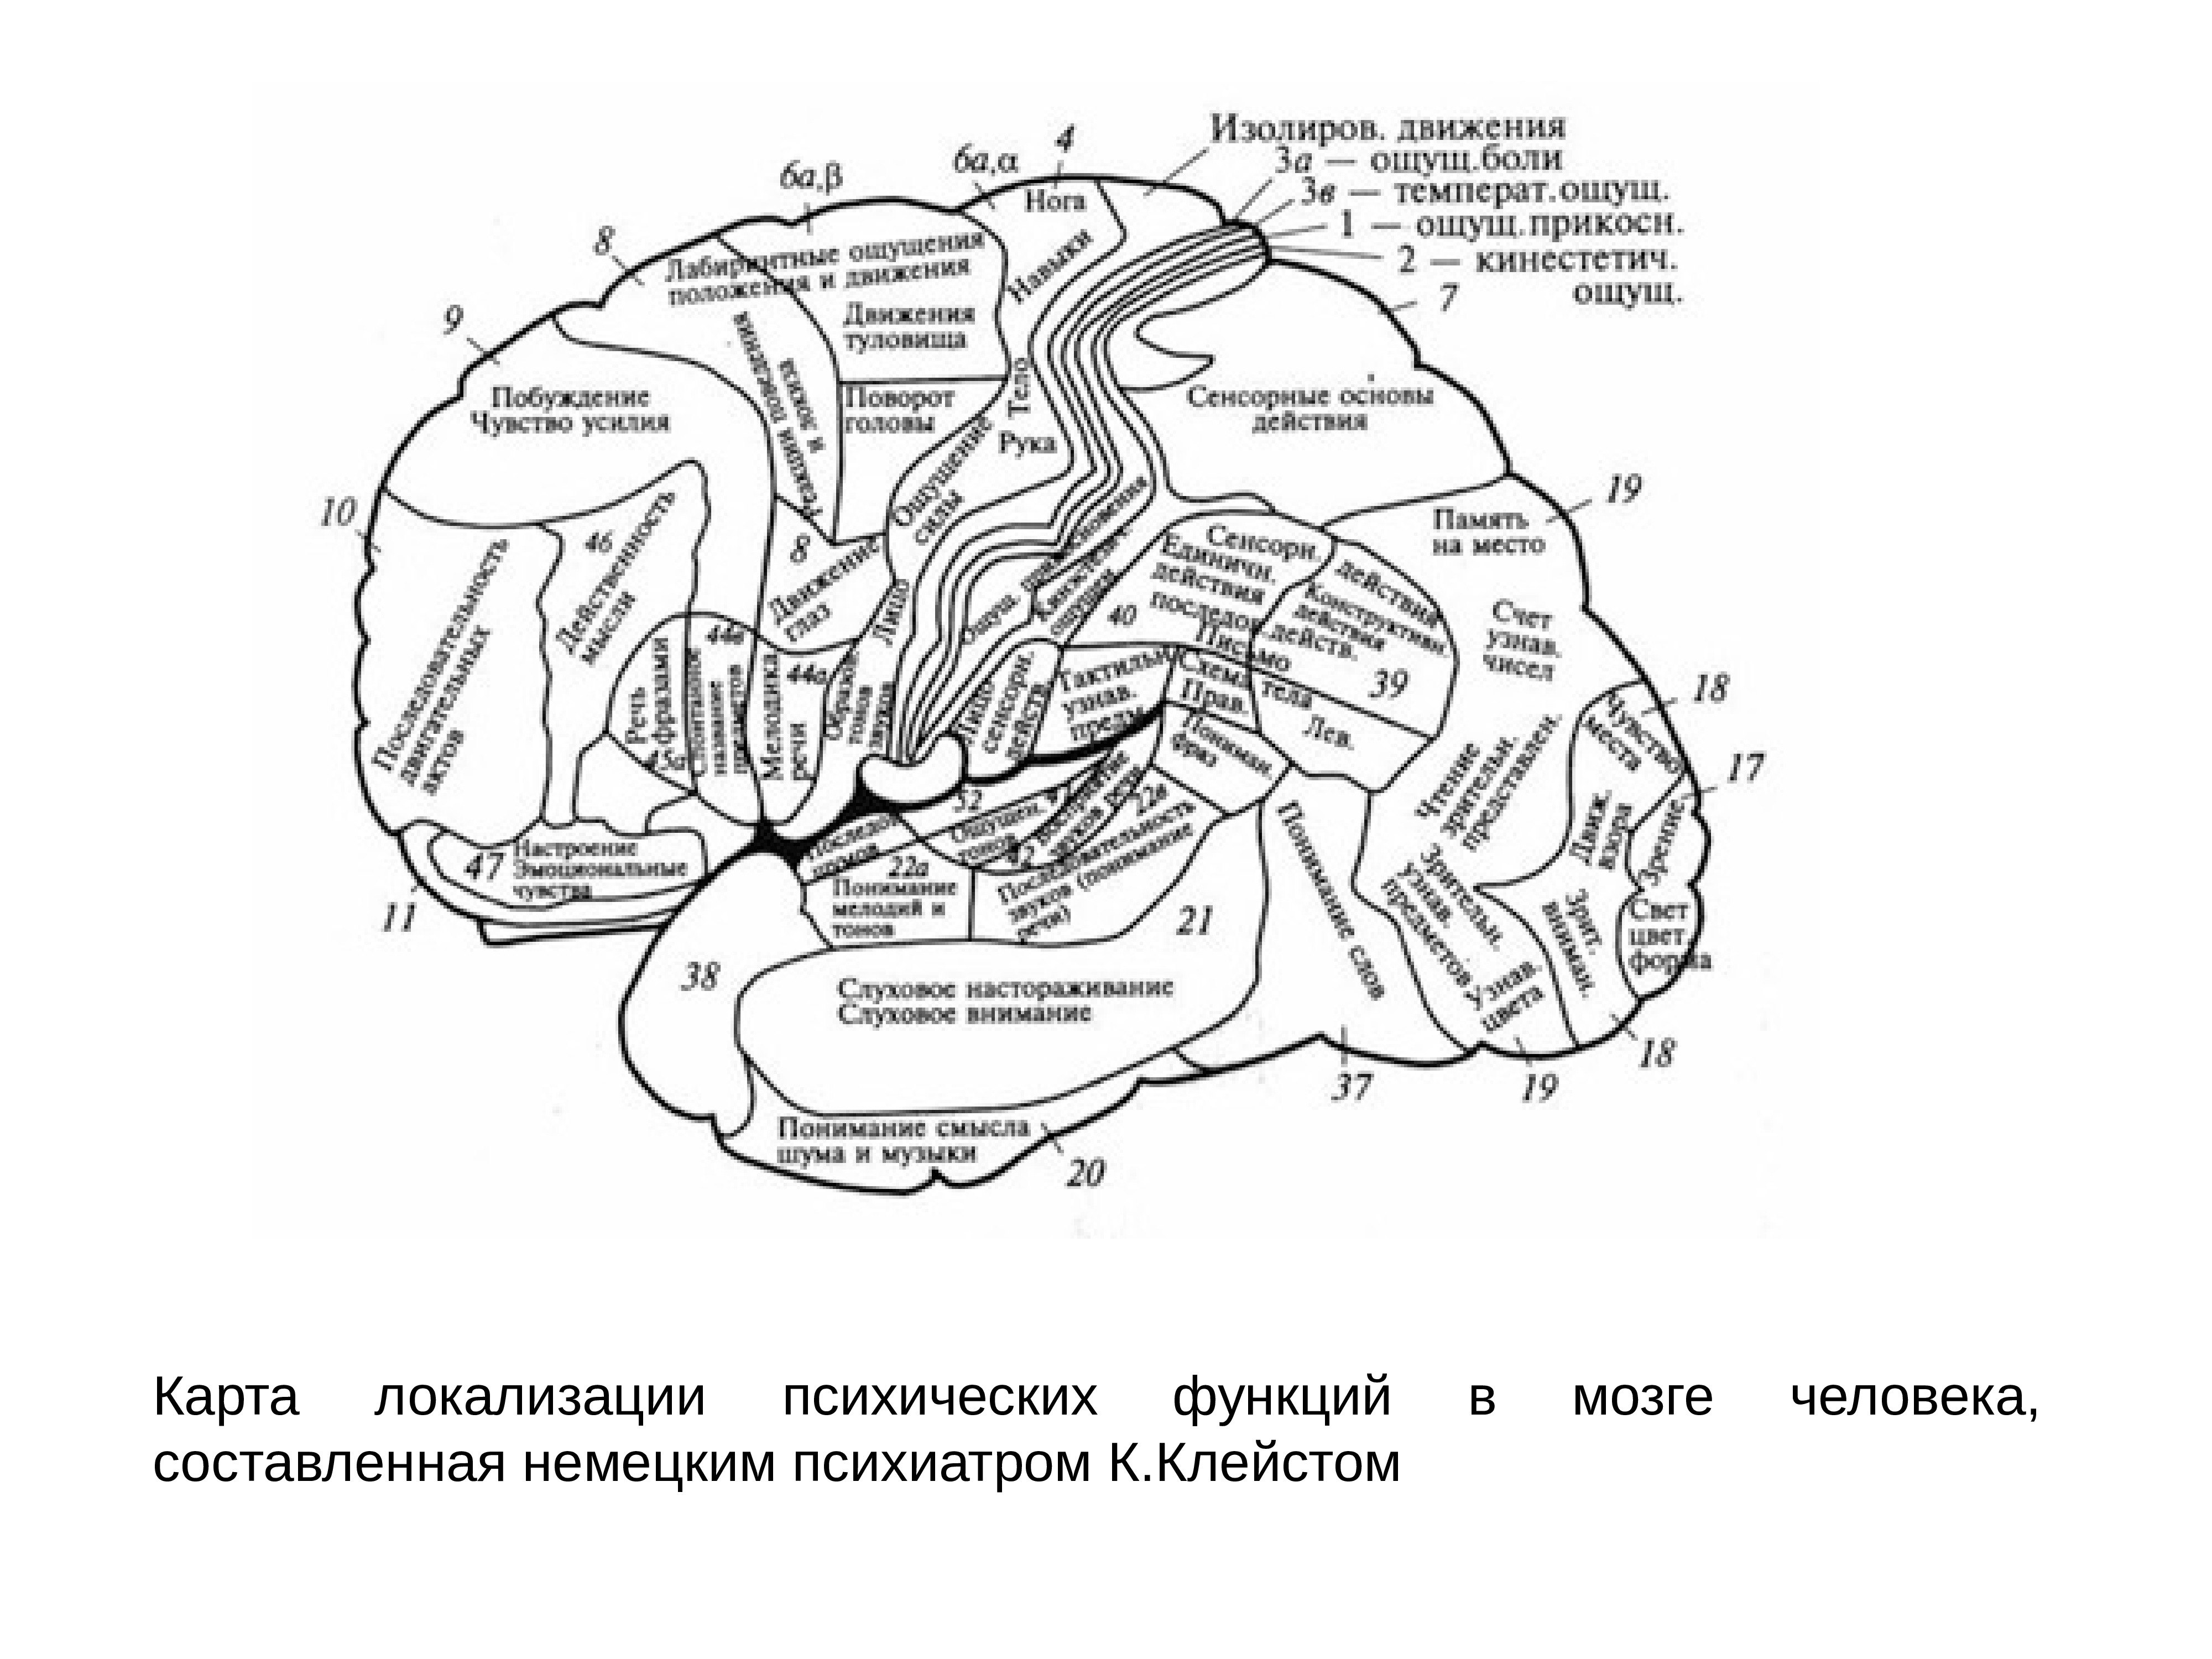 Локализация психических функций в мозге. К Клейст локализационная карта мозга. Локализационная карта к. Кляйста. Картам локализаций психических функций мозга. Локализационная карта Клейста или клейма.